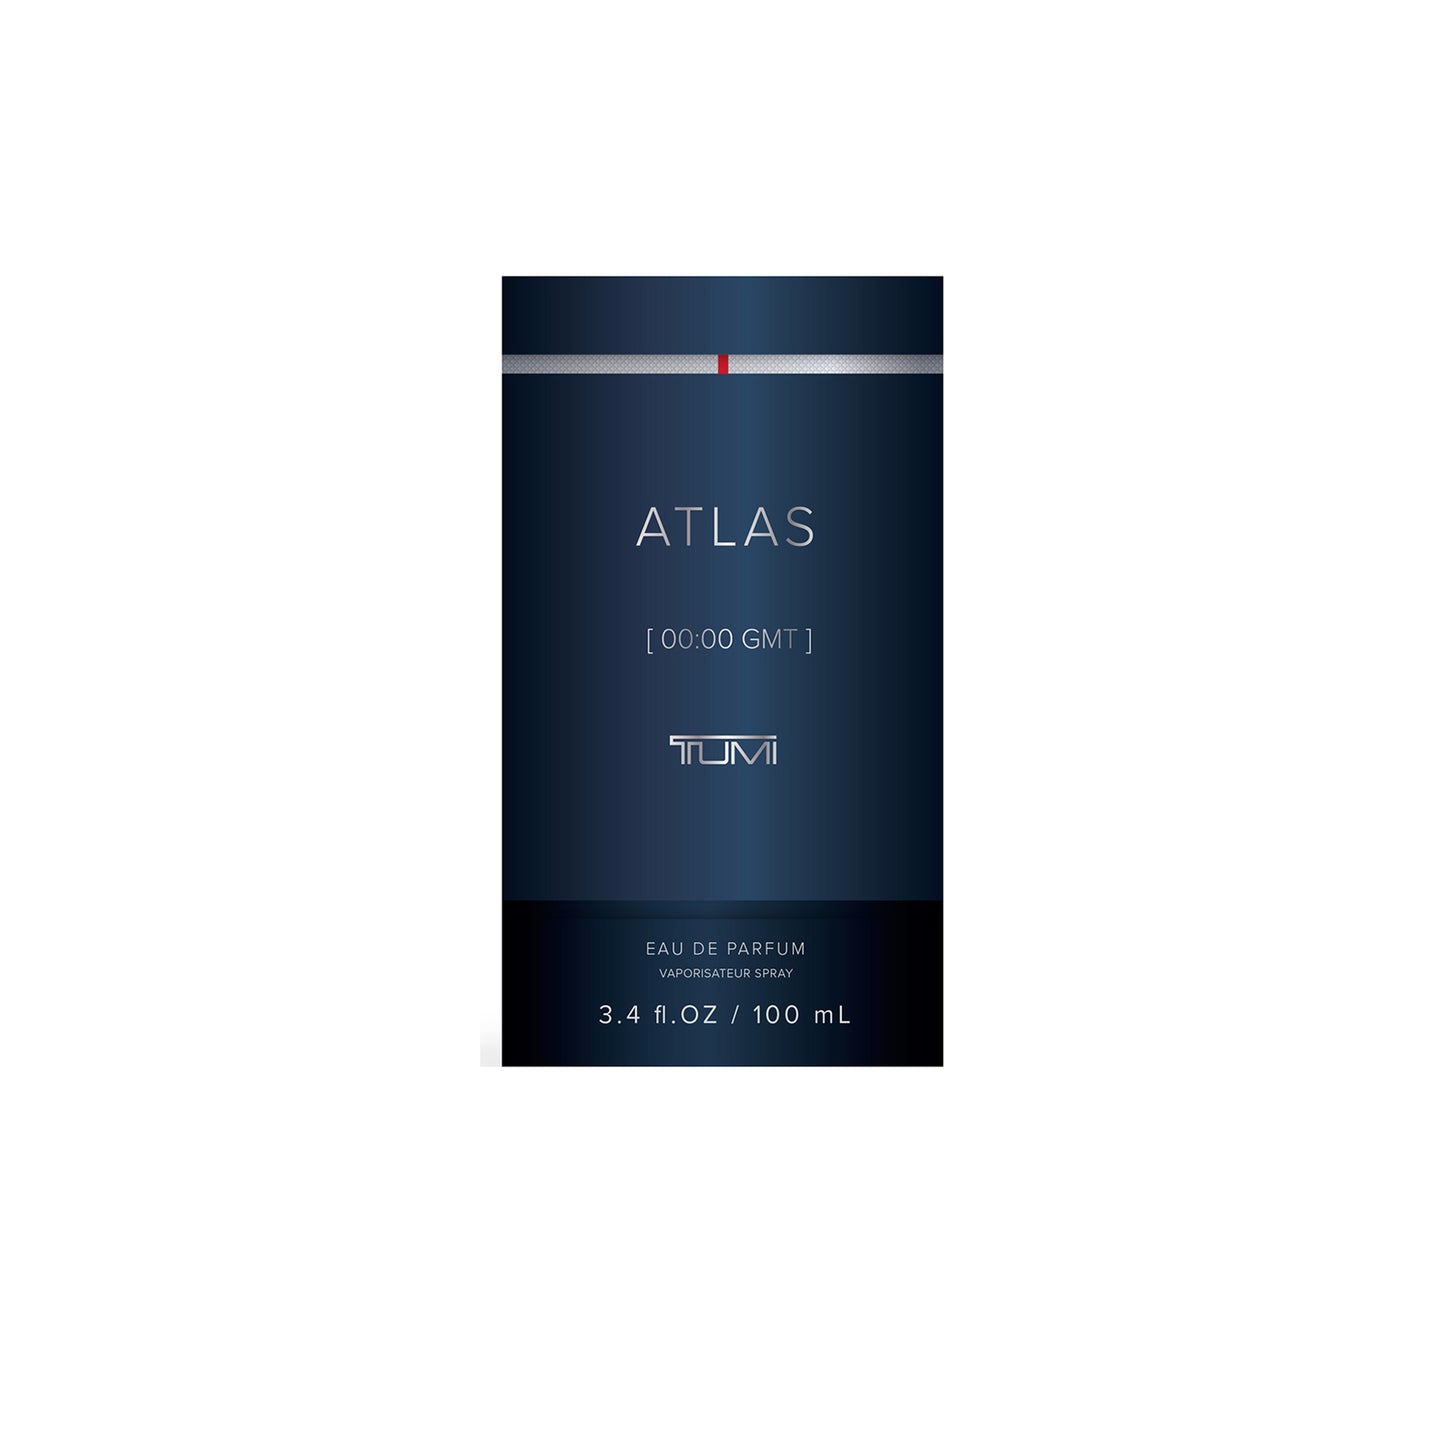 ATLAS [00:00 GMT] TUMI - 3.4oz Eau de Parfum